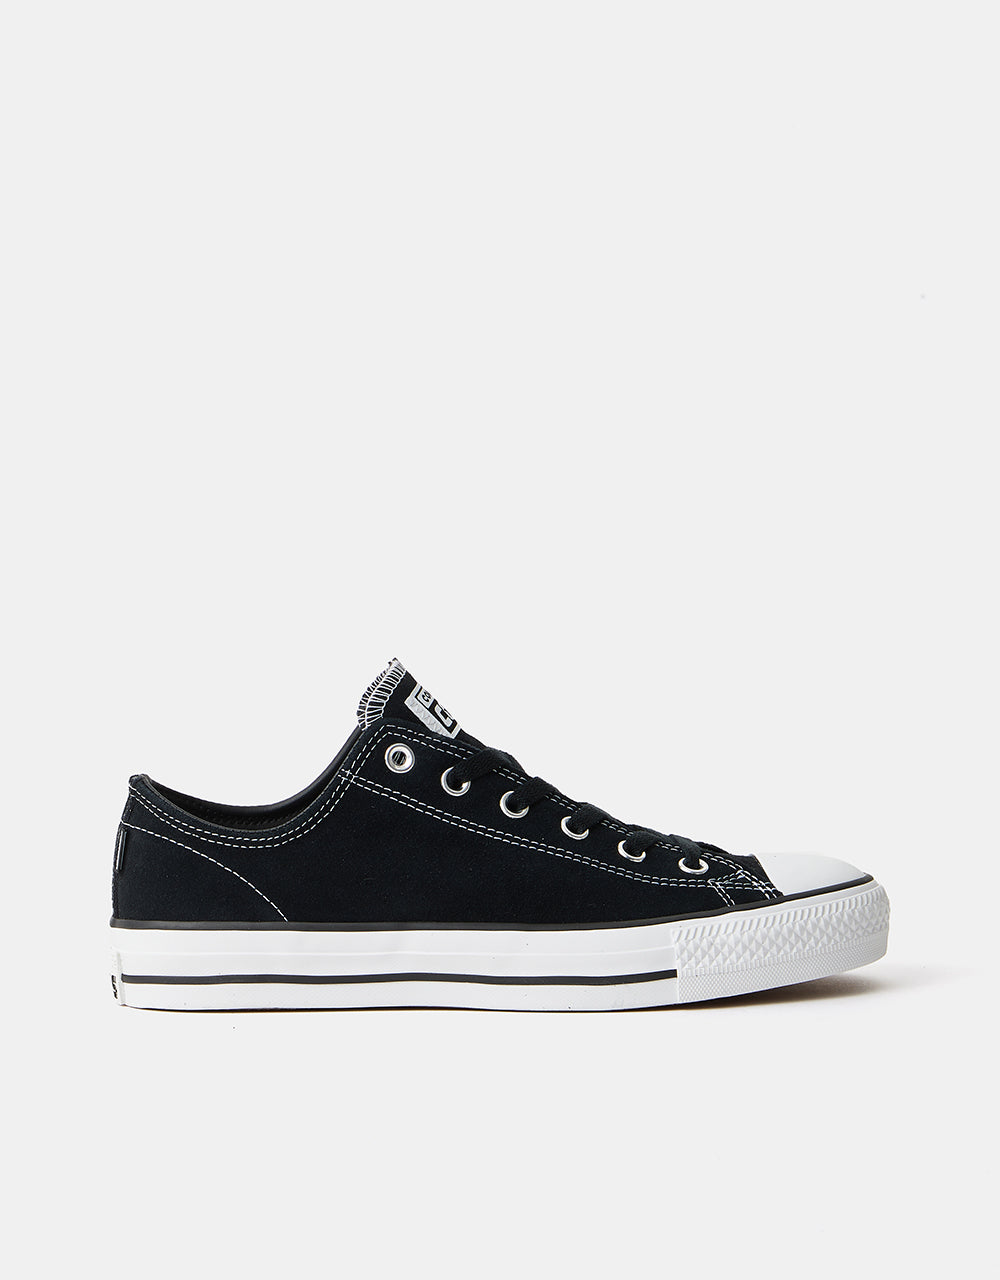 Converse CONS CTAS Pro Suede Skate Shoes - Black/Black/White